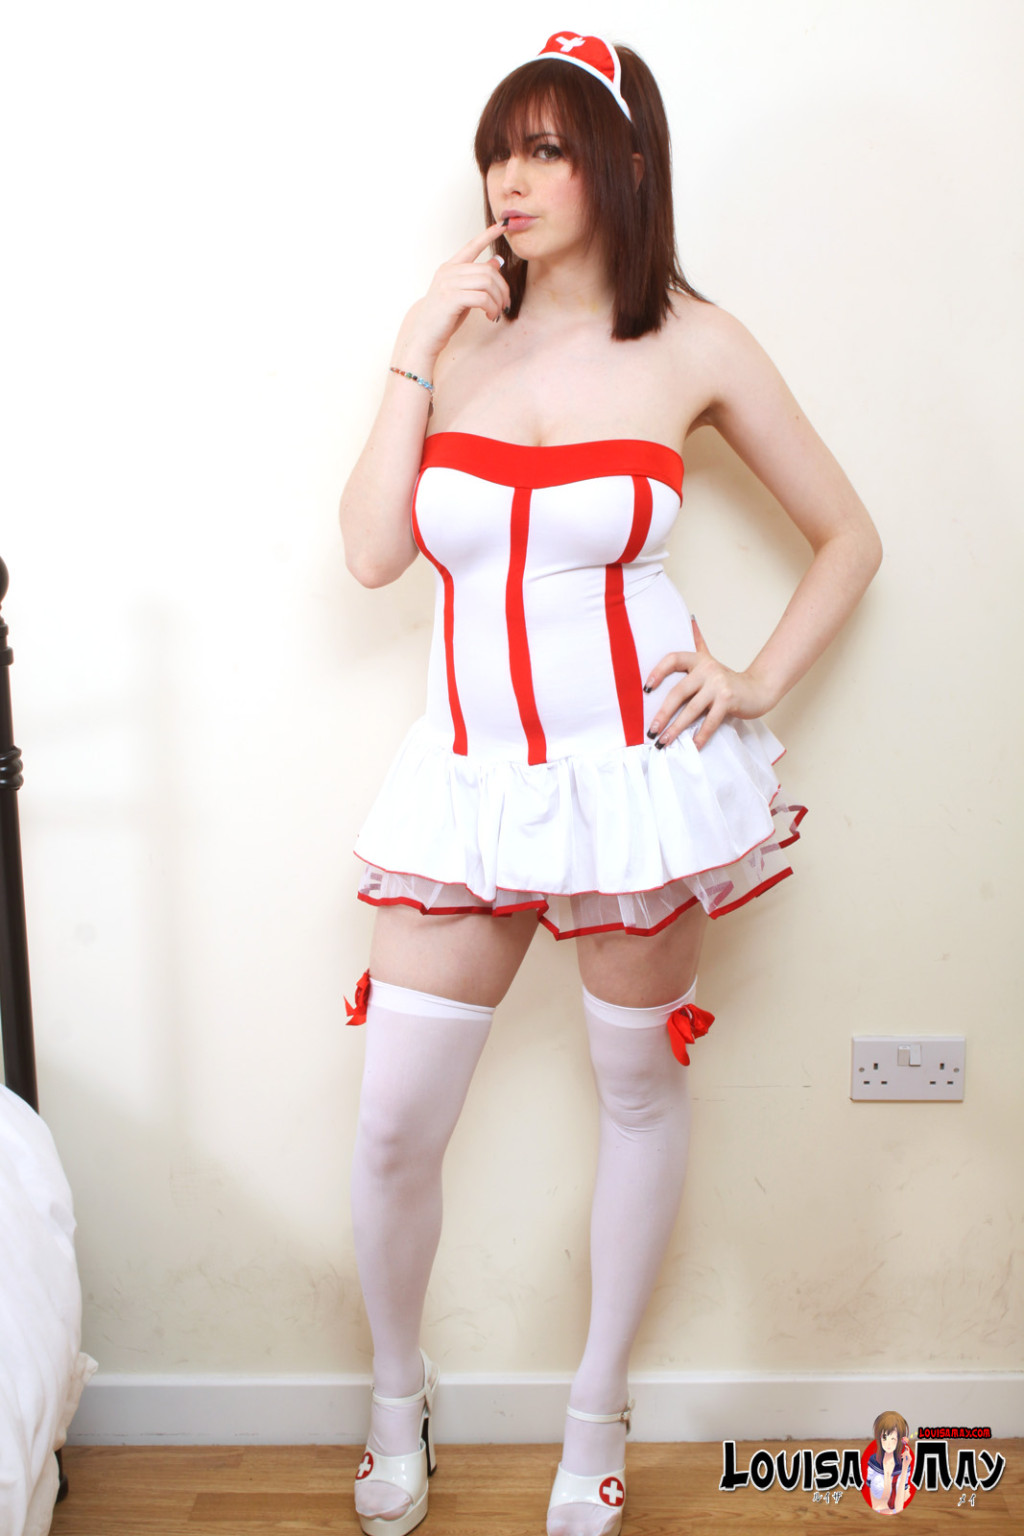 Manga nurse Louisa May #69869496